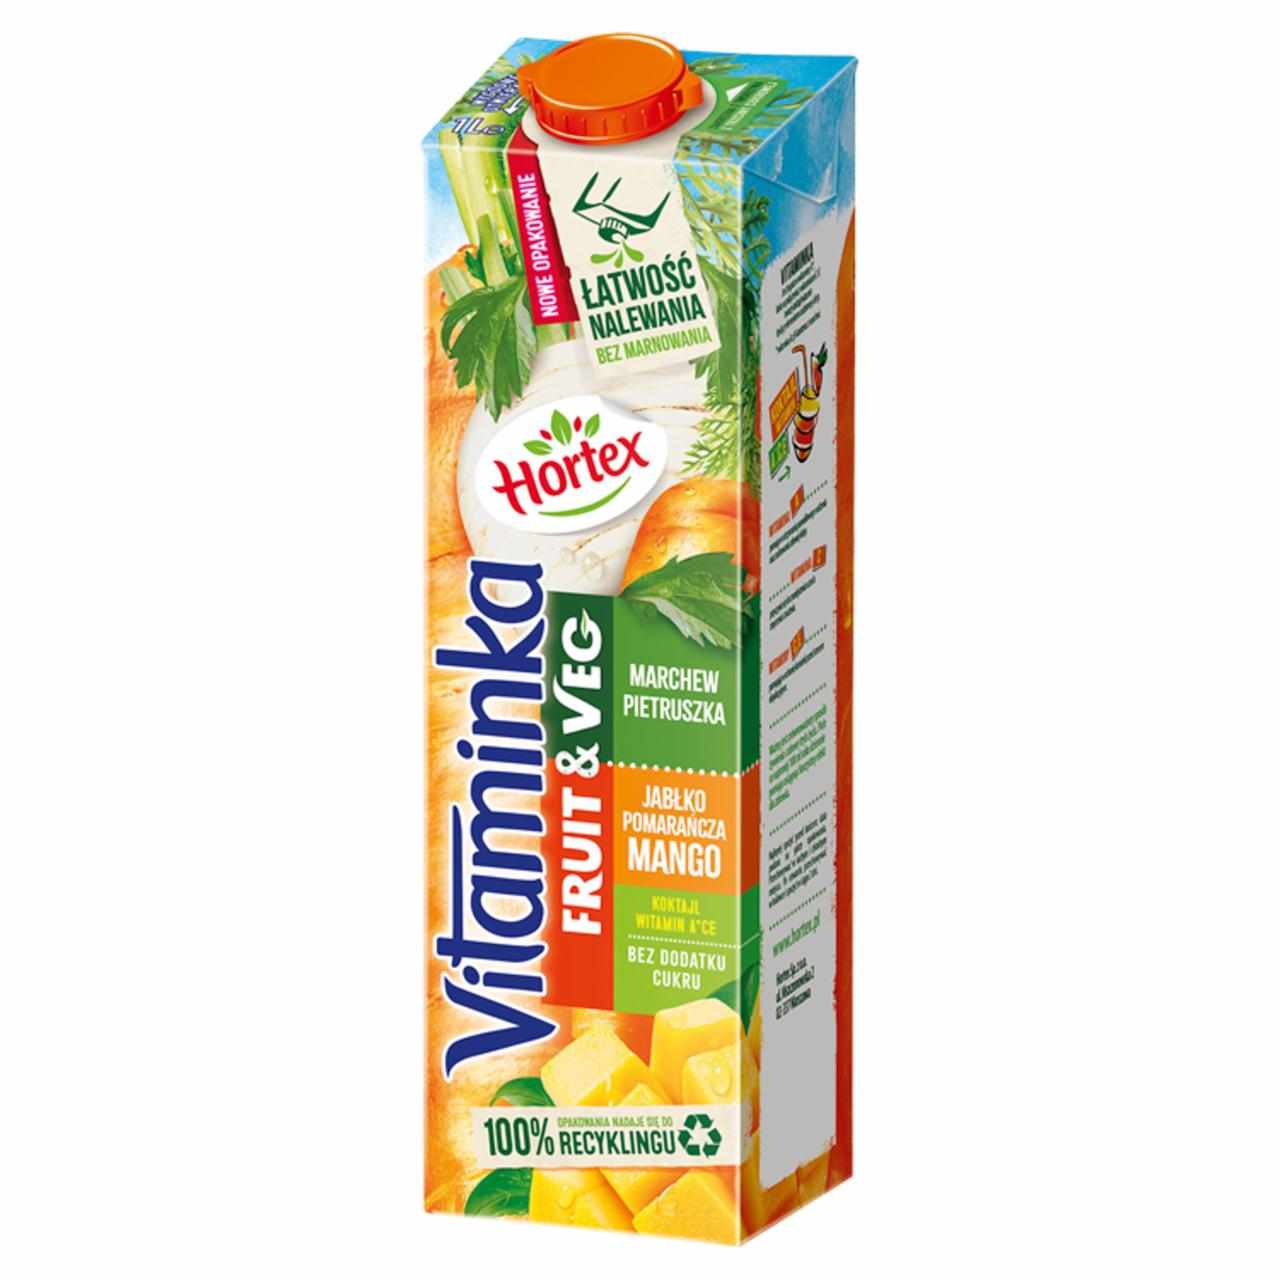 Zdjęcia - Hortex Vitaminka Fruit & Veg Sok jabłko pomarańcza mango marchew pietruszka 1 l